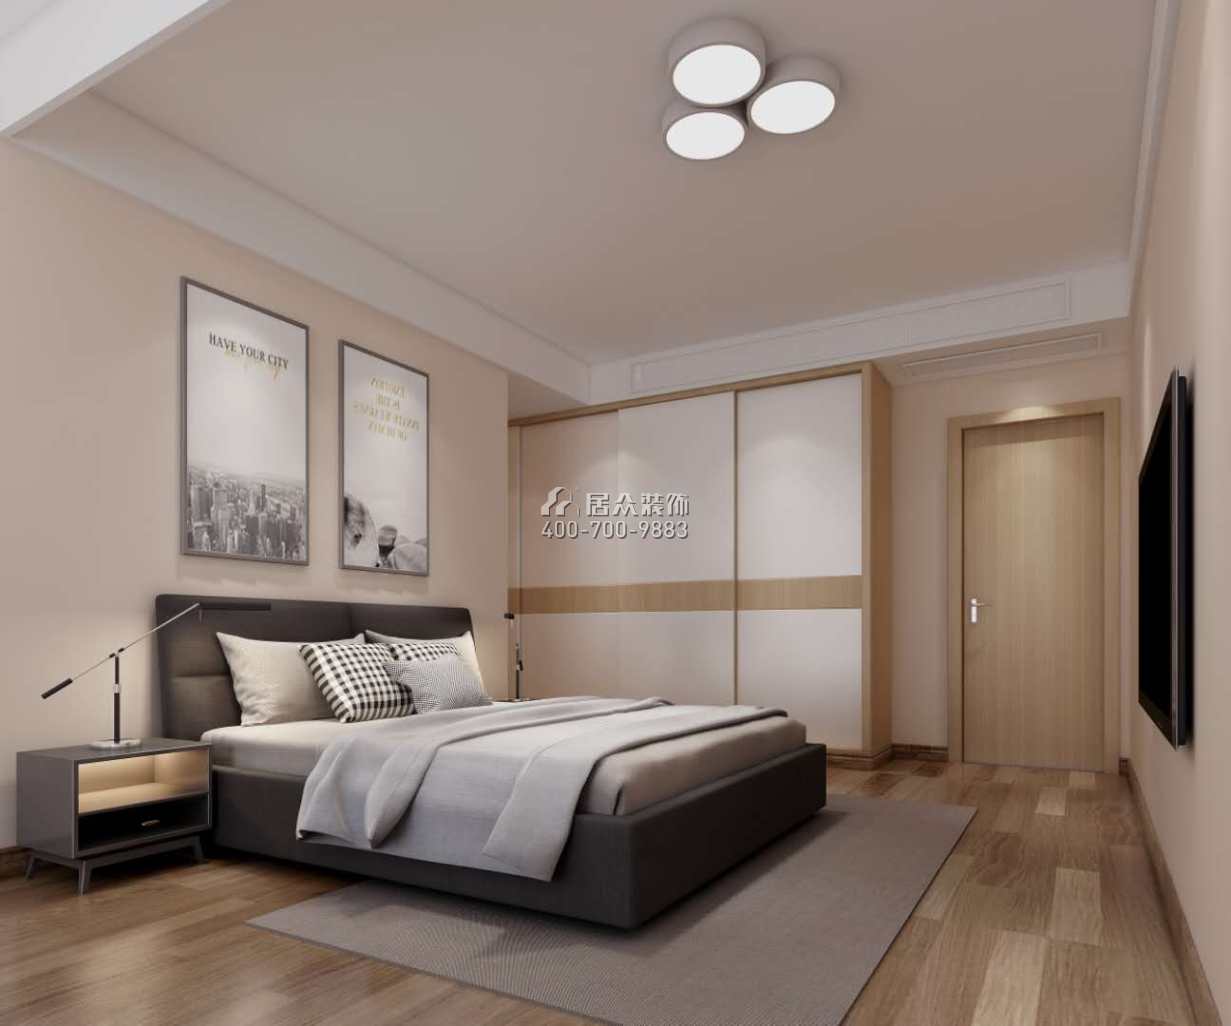 锦江豪庭220平方米现代简约风格平层户型卧室装修效果图